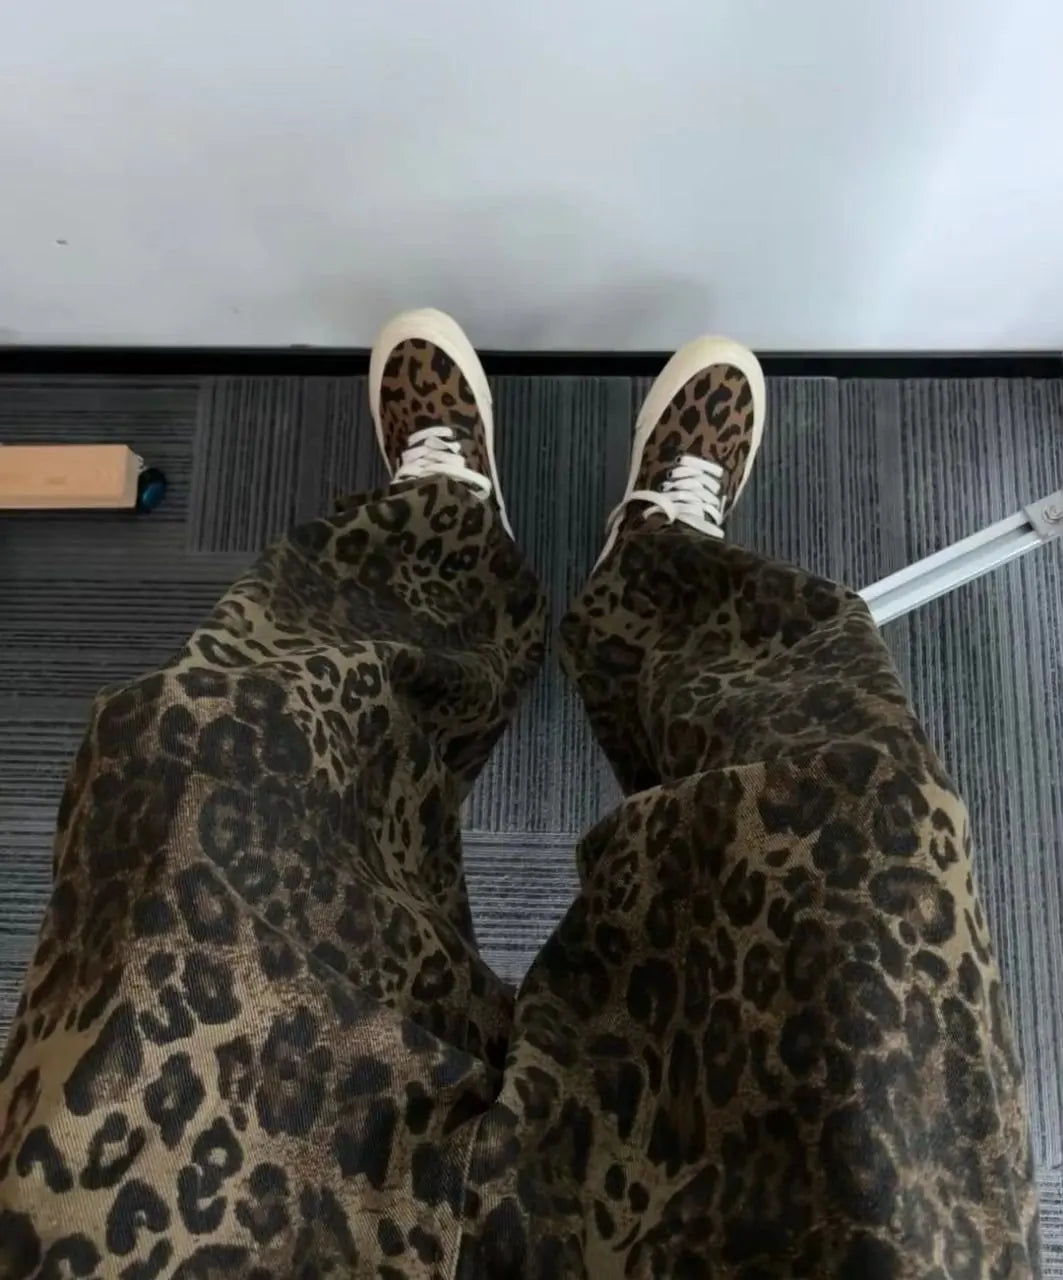 Leopard Print Jeans